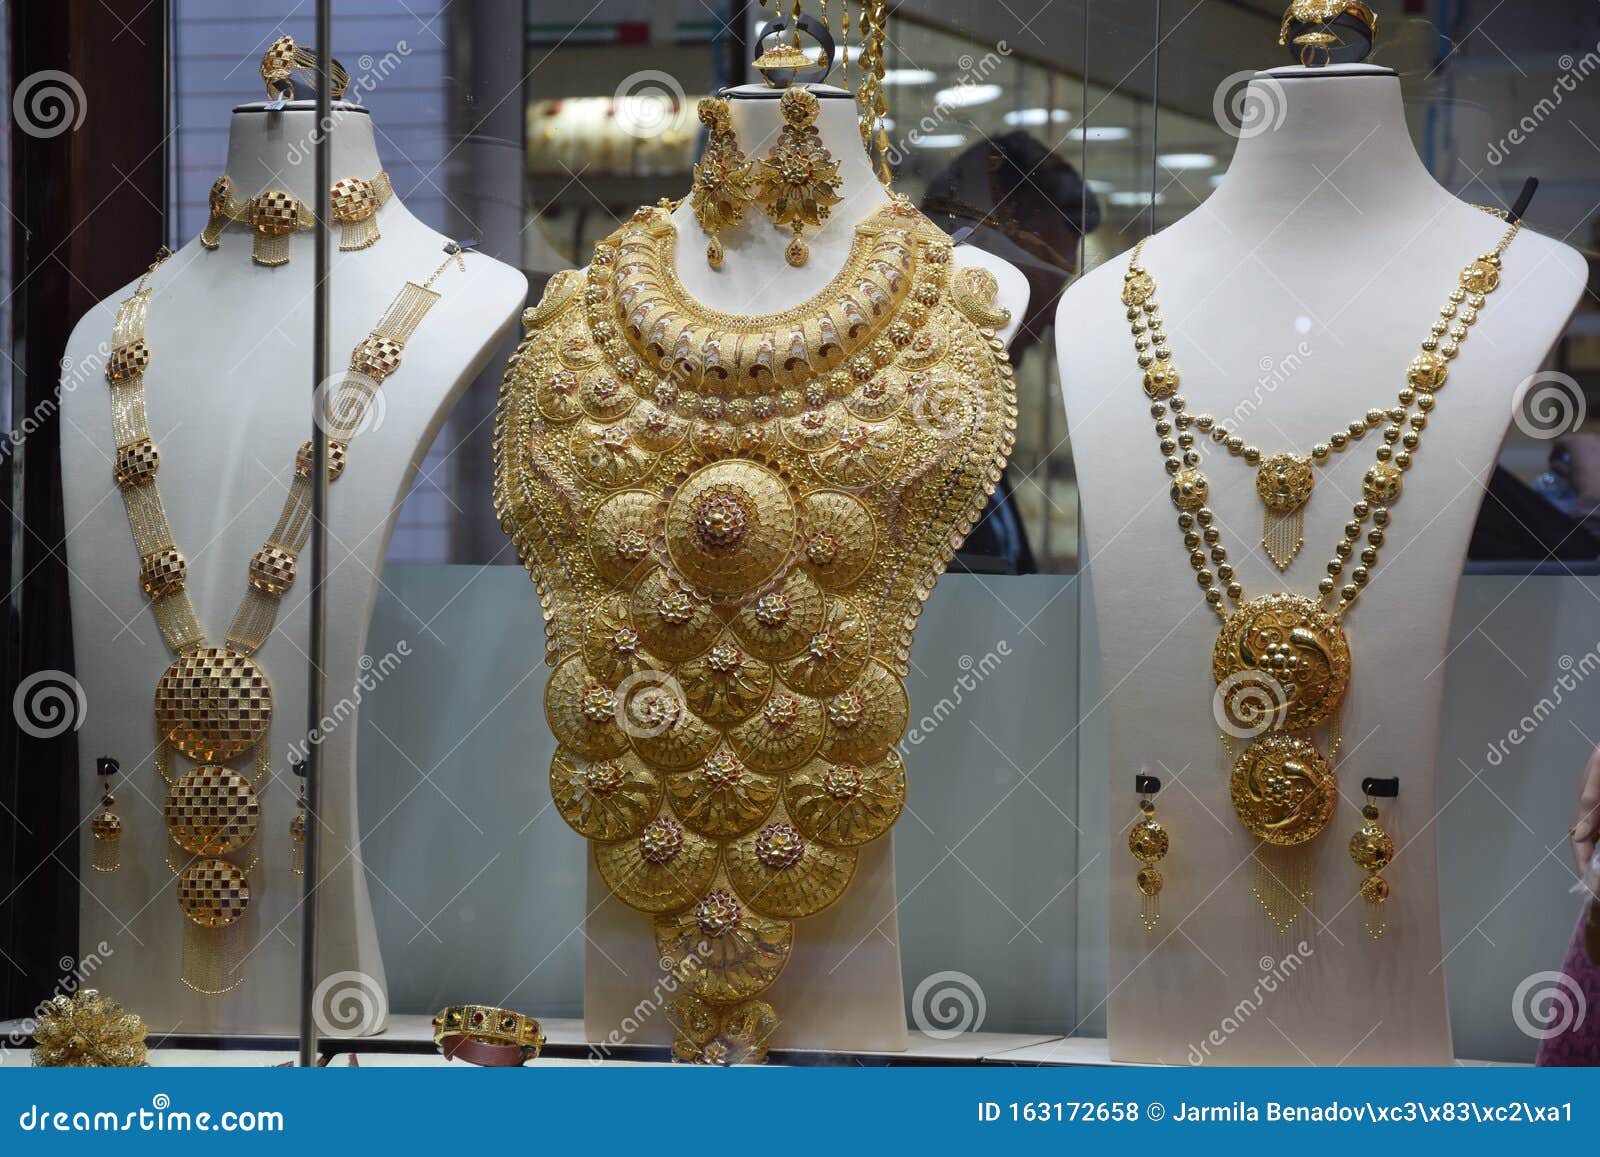 BR2276-2.6 Size Buy Original Antique Bangle Lakshmi Designs Vintage  Collections